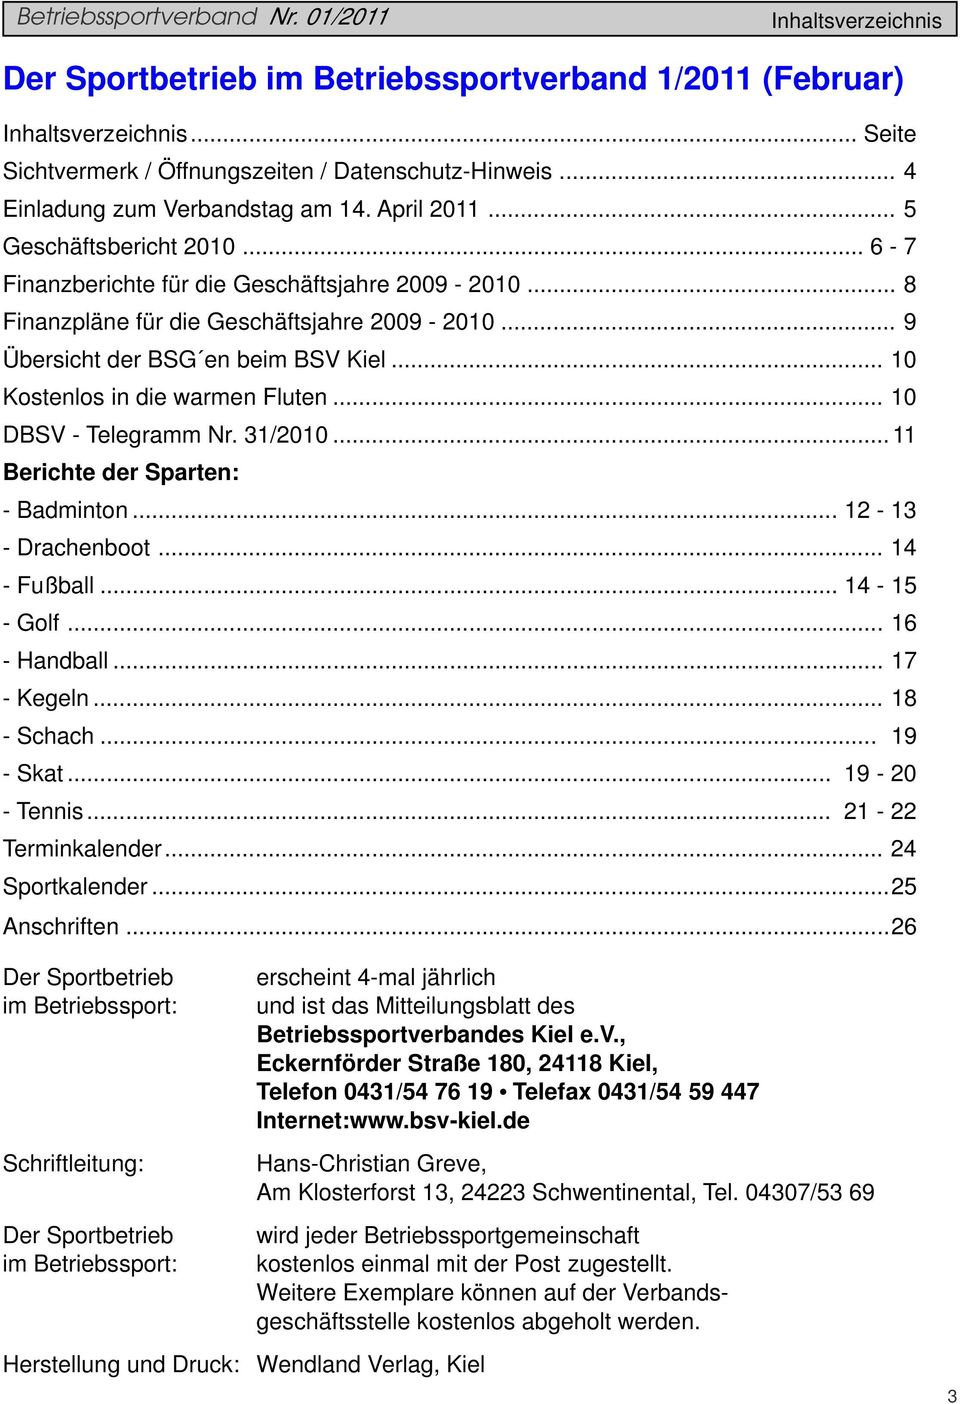 .. 9 Übersicht der BSG en beim BSV Kiel... 10 Kostenlos in die warmen Fluten... 10 DBSV - Telegramm Nr. 31/2010... 11 Berichte der Sparten: - Badminton... 12-13 - Drachenboot... 14 - Fußball.